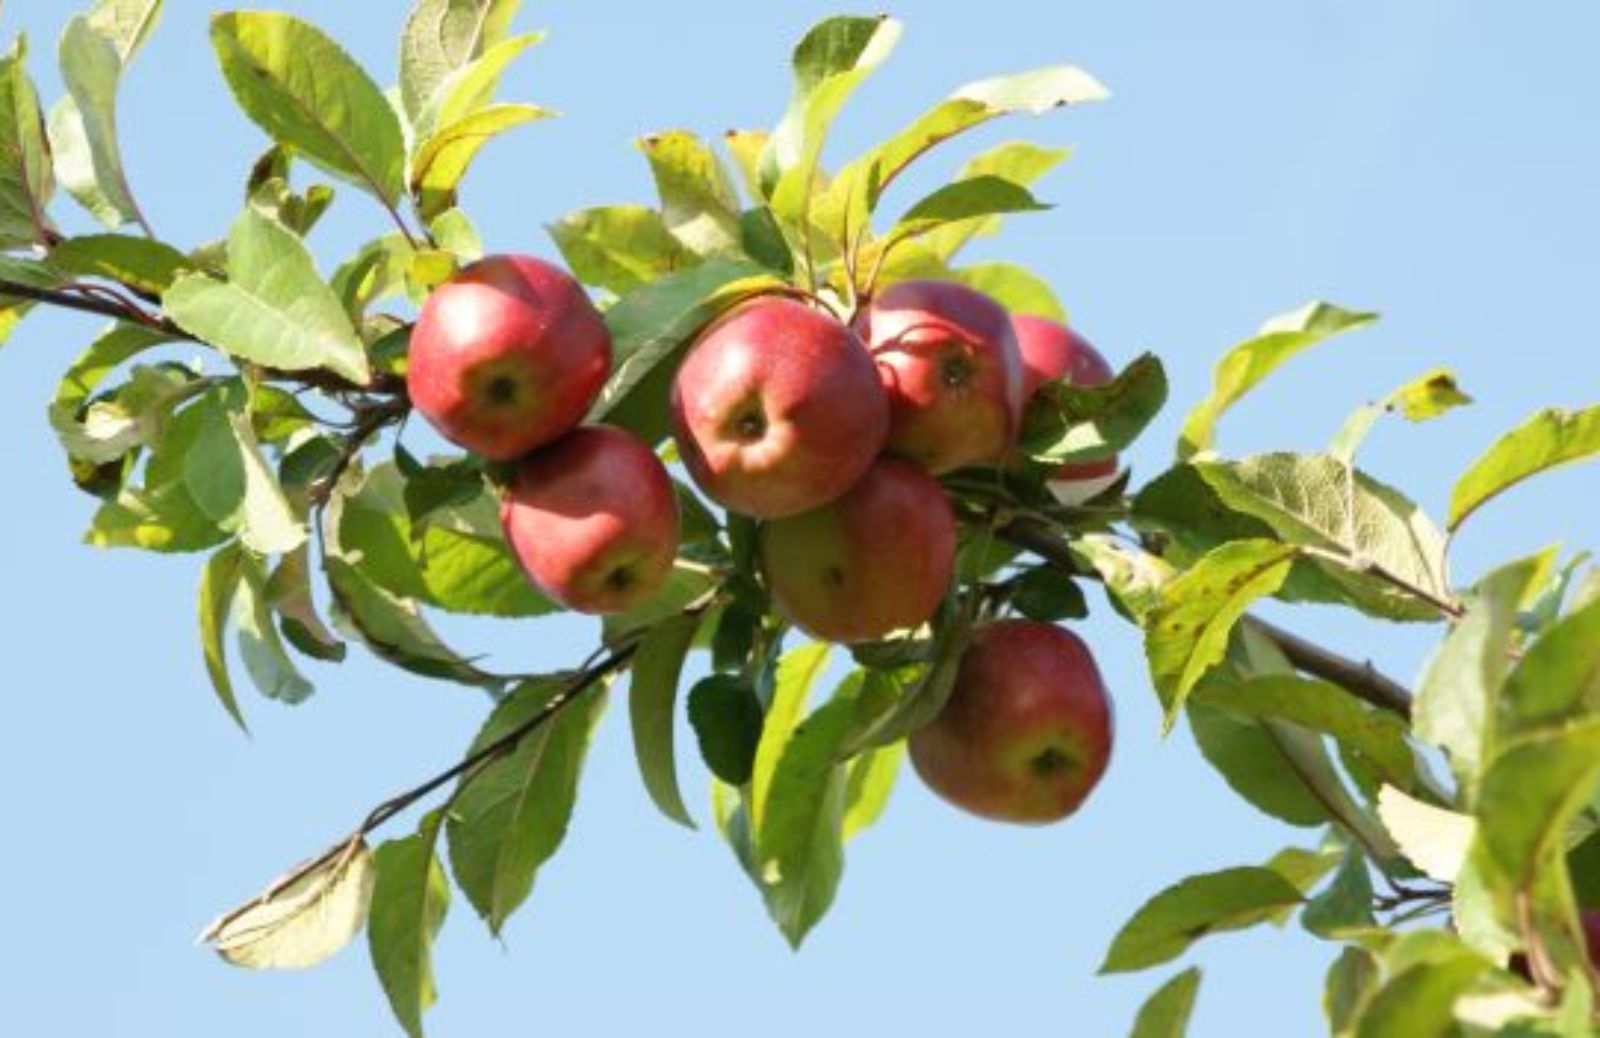 Come orientarsi tra le mele di stagione